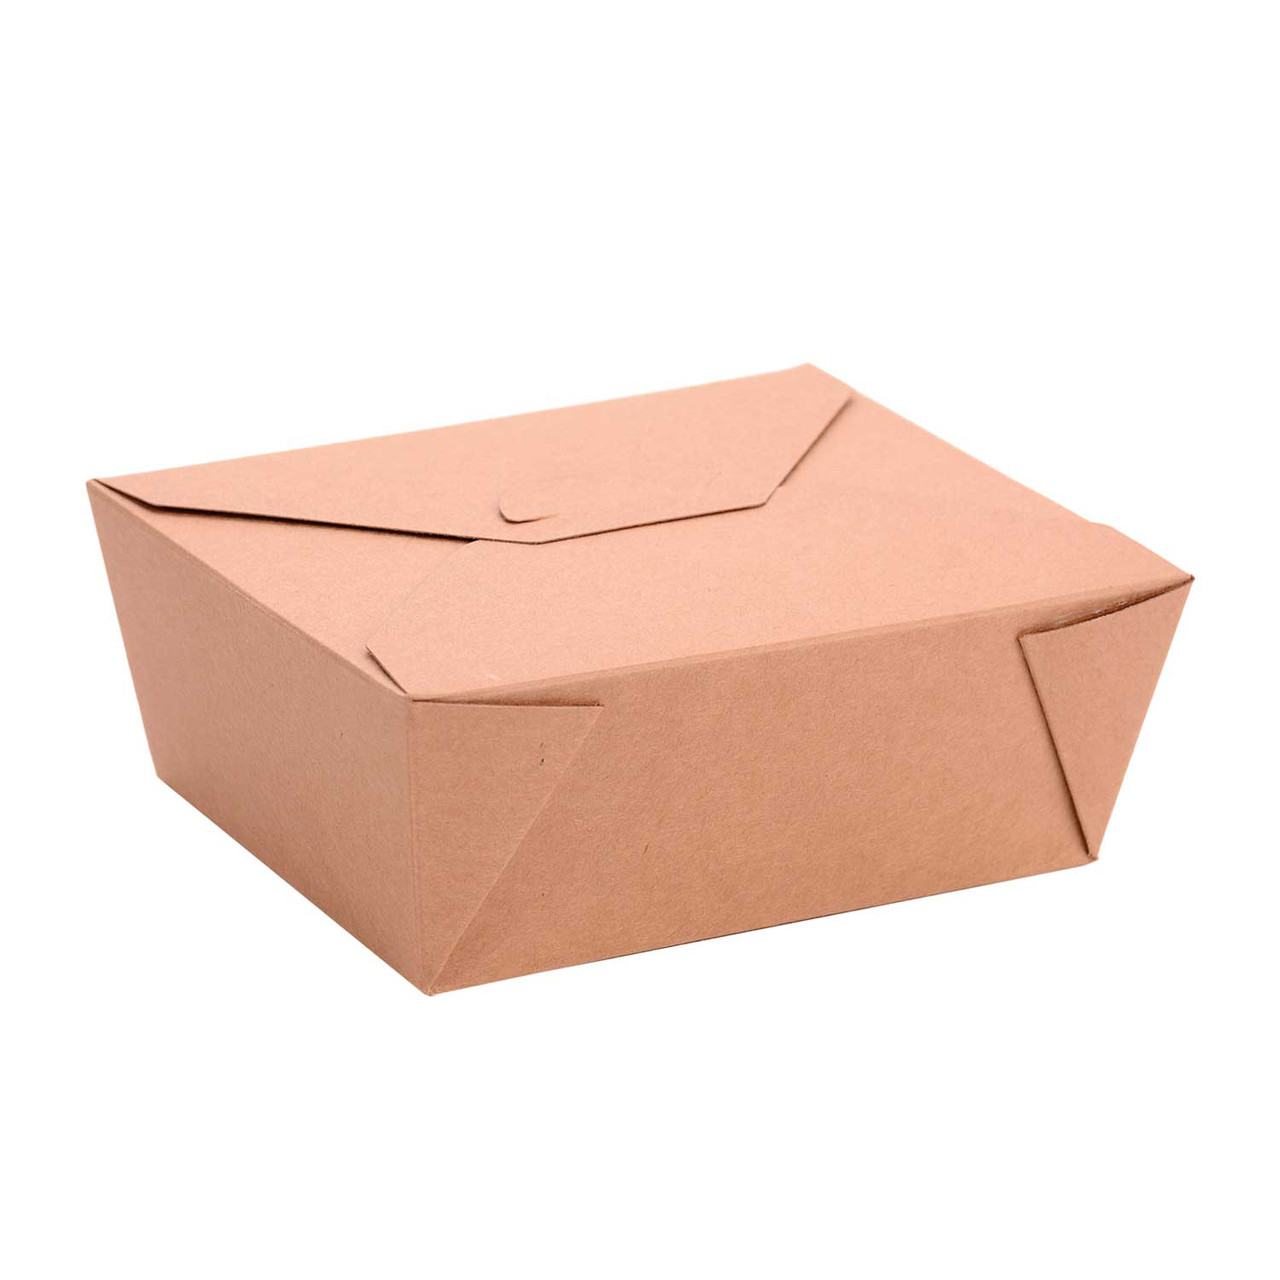 Greenpak Kraft Paper Take Out Boxes, Microwaveable, 6.75 X 5.5 X 2.5In | 50UN/Unit, 6 Units/Case